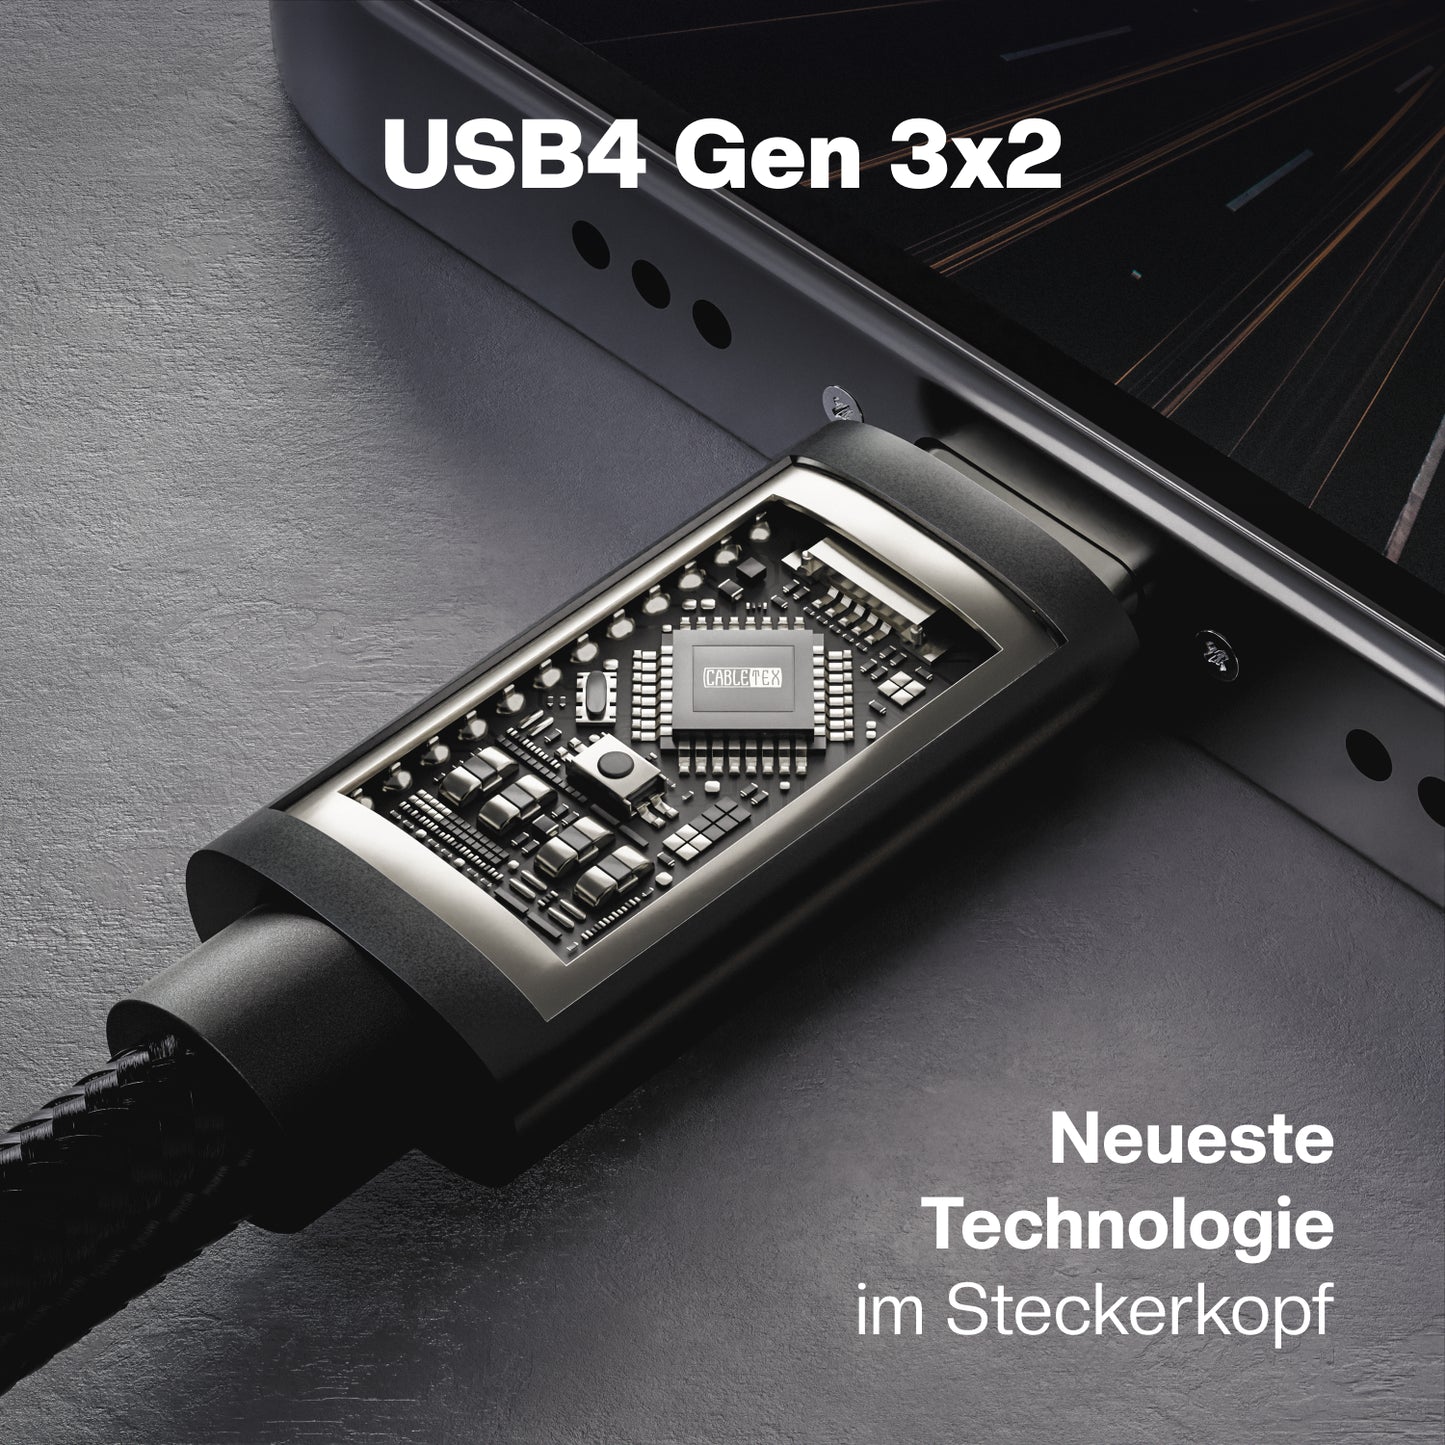 USB4 Gen3x2 USB-C Monitorkabel | für Thunderbolt 3 | PowerDelivery bis 240 Watt | 5A, 48V, 40 GBit/s Datenübertragung | bidirektional